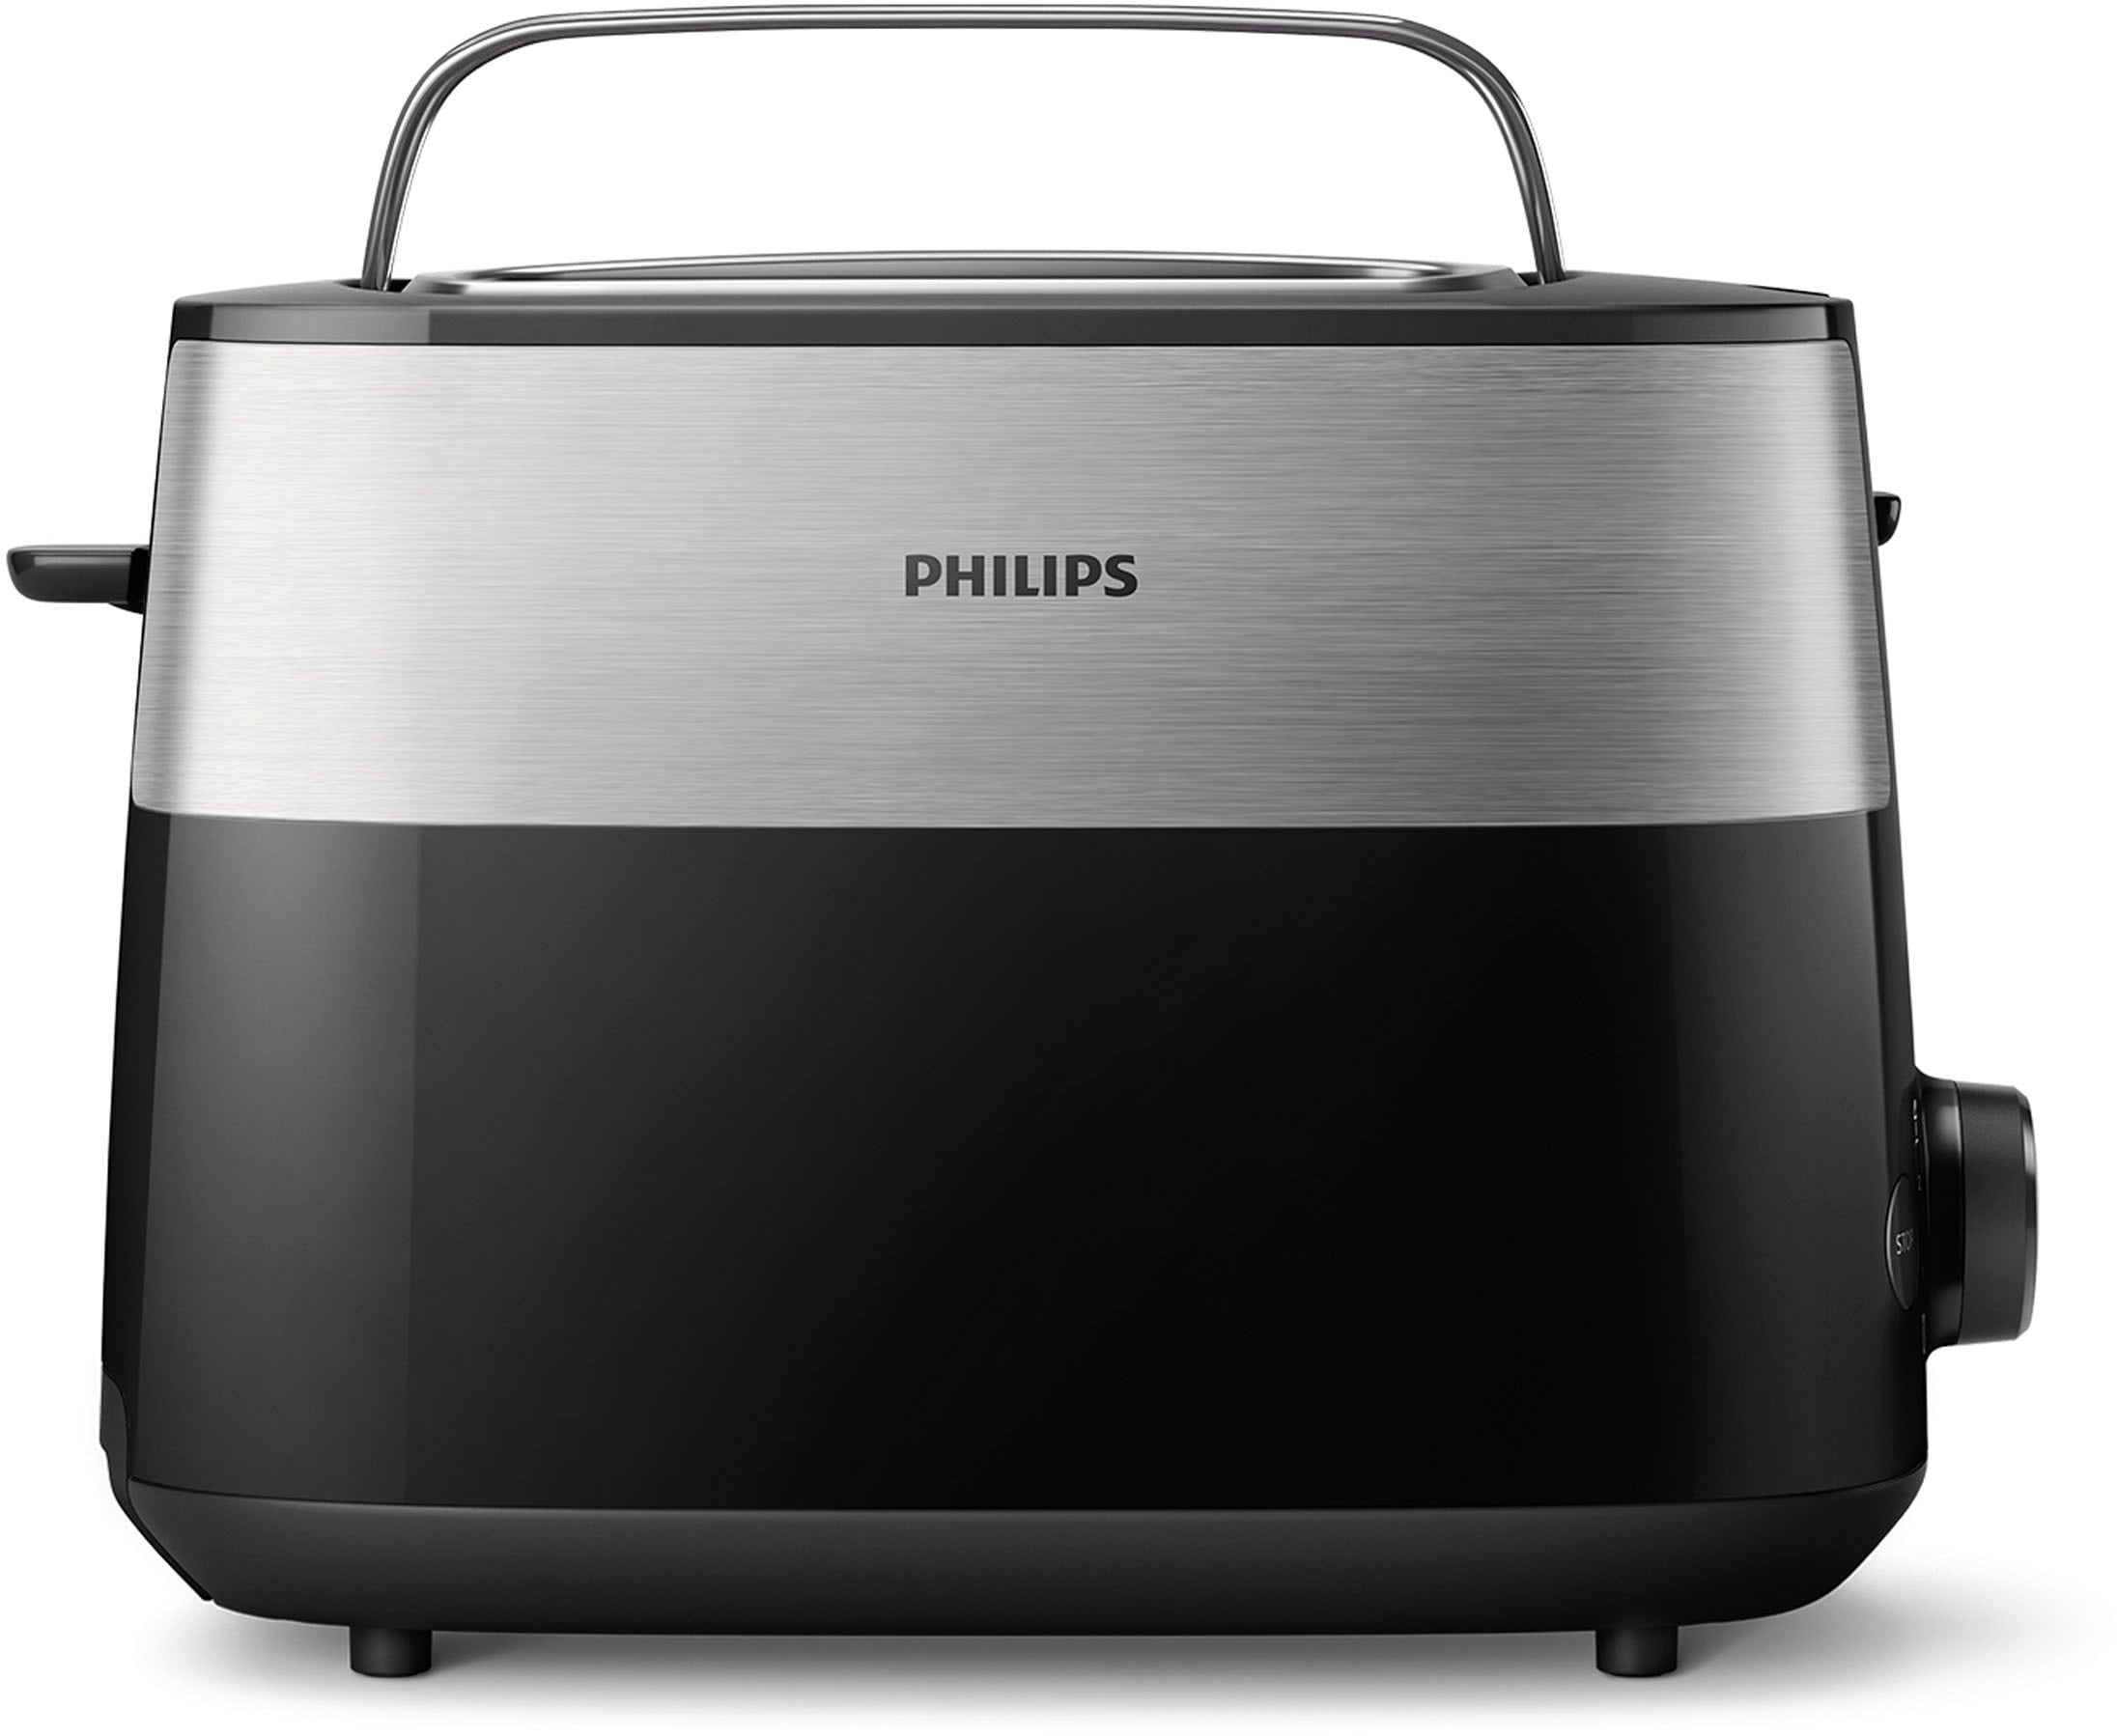 Philips Toaster »HD2516/90 Daily Collection«, 2 kurze Schlitze, 830 W, integrierter Brötchenaufsatz und 8 Bräunungsstufen, edelstahl/schwarz